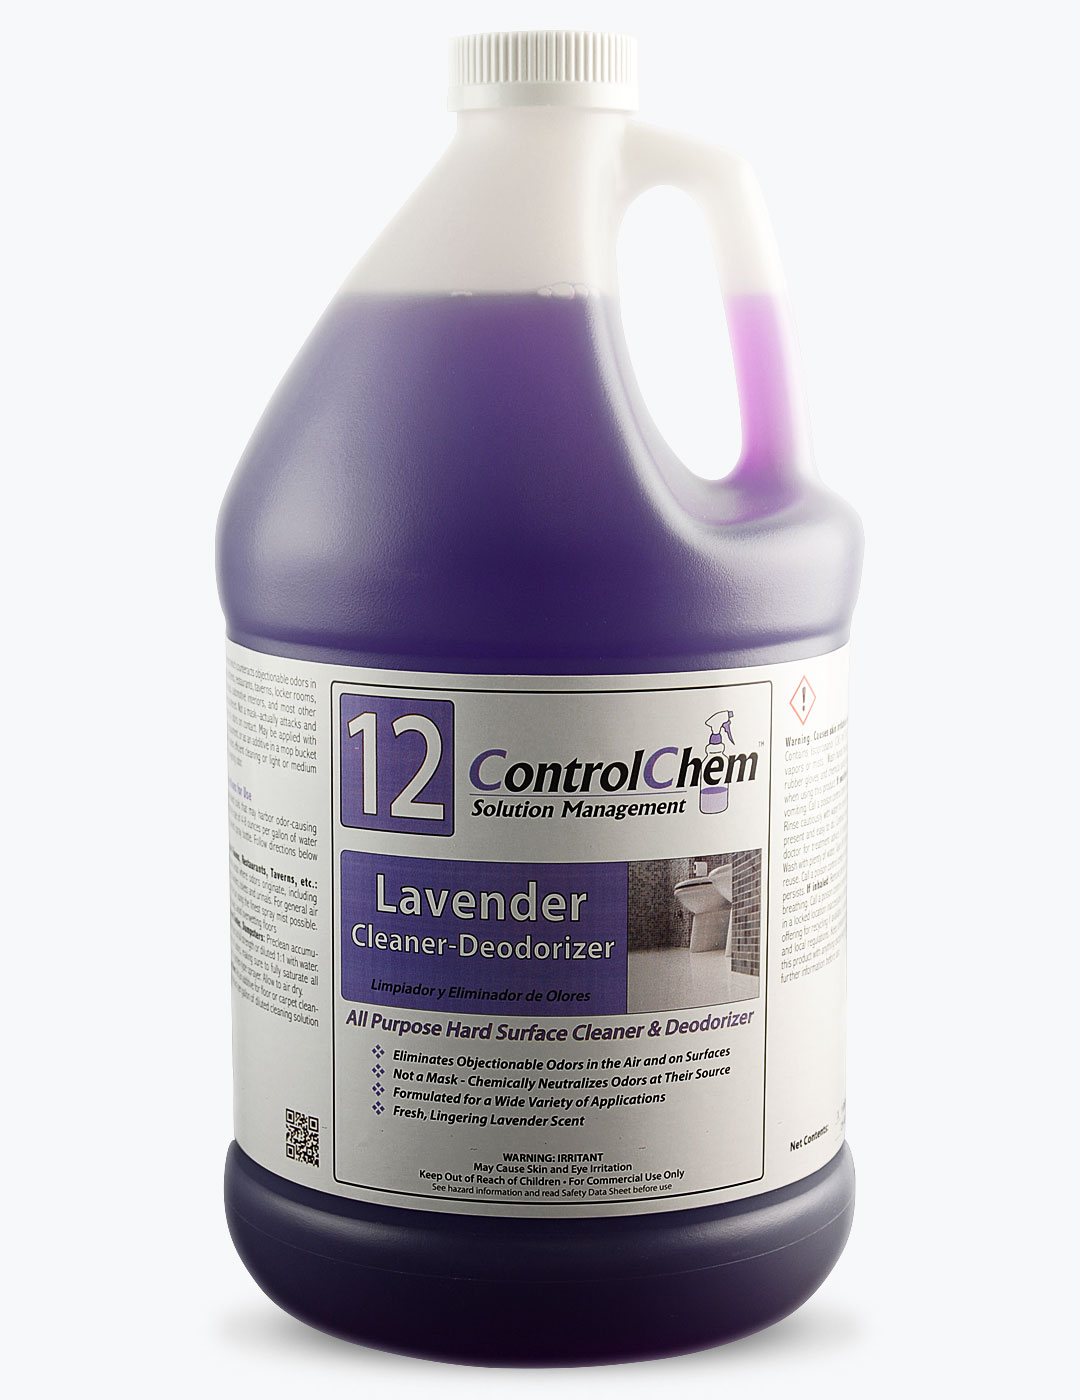 ControlChem #12 Lavender Cleaner-Deodorizer